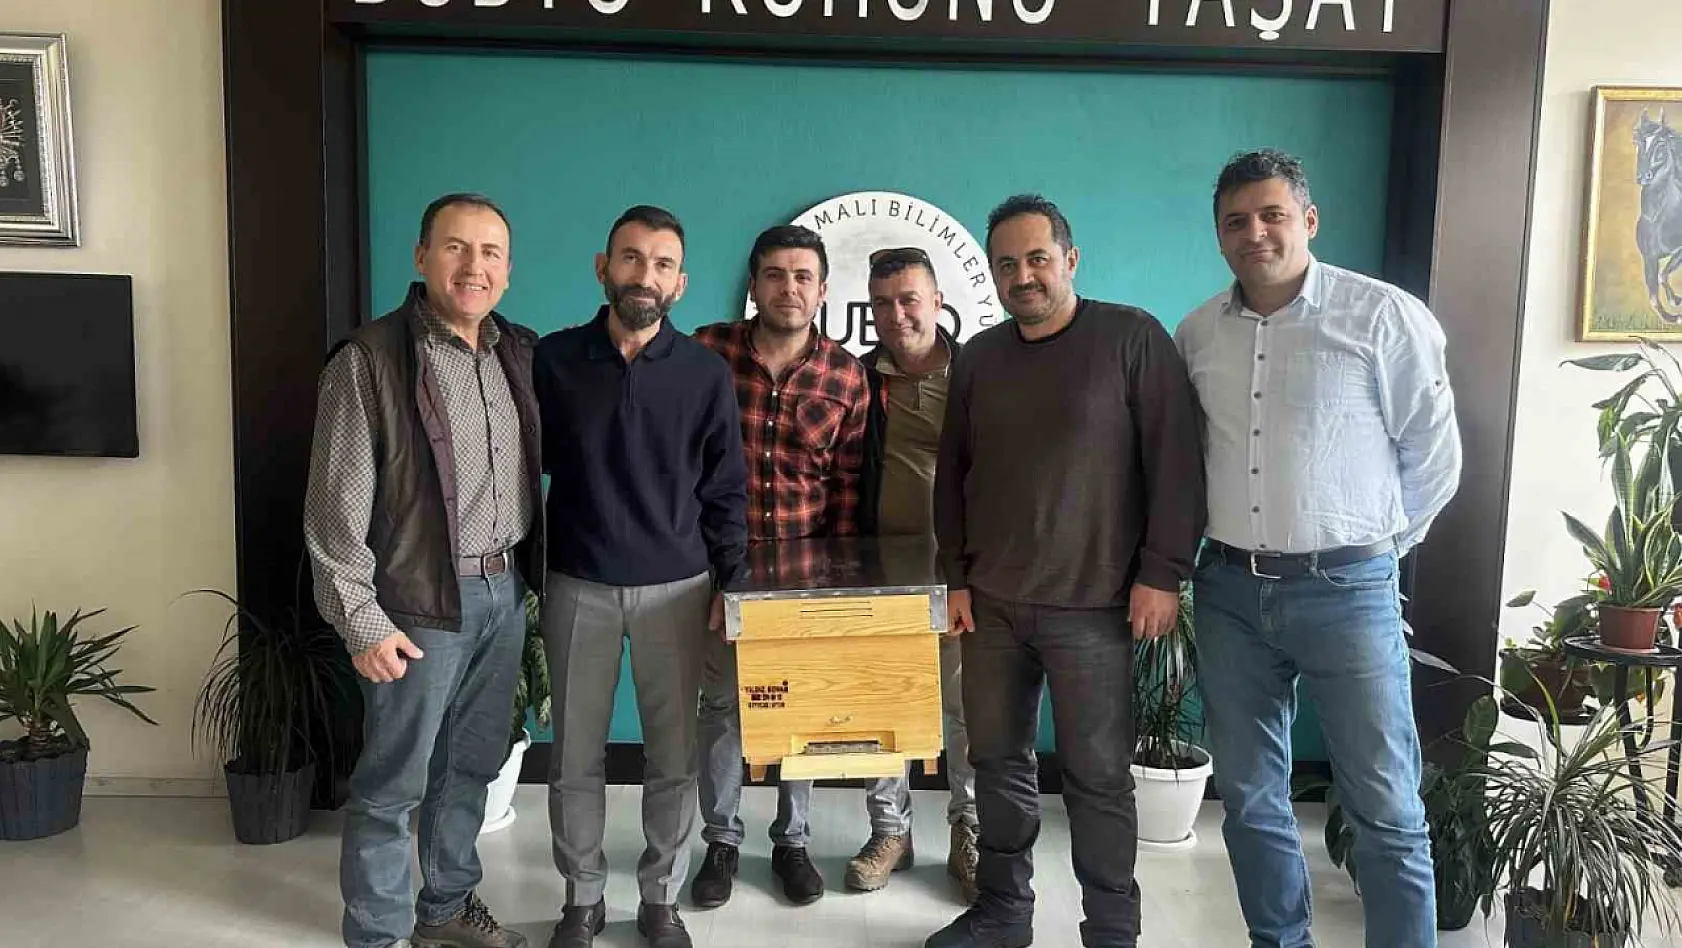 Balıkesir Üniversitesi projeleri ile kente değer katıyor